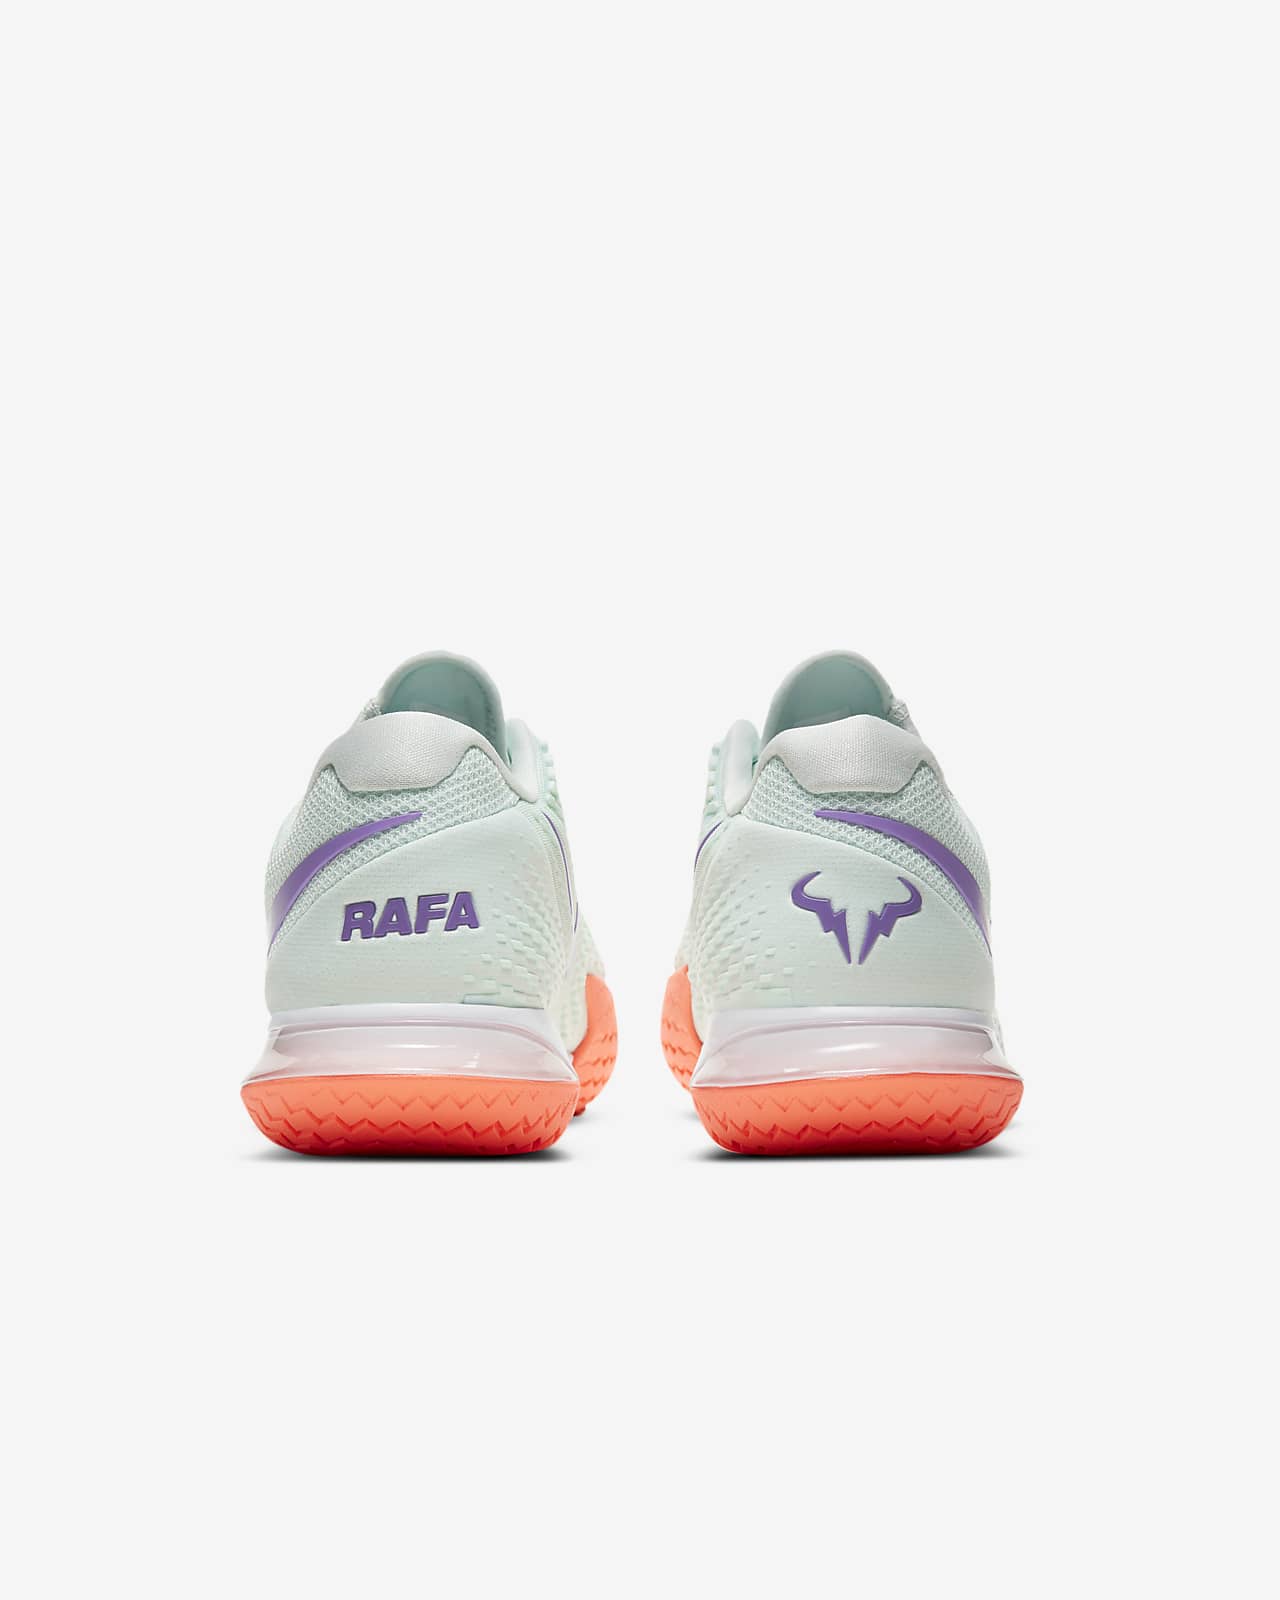 nike rafa tennis shoes